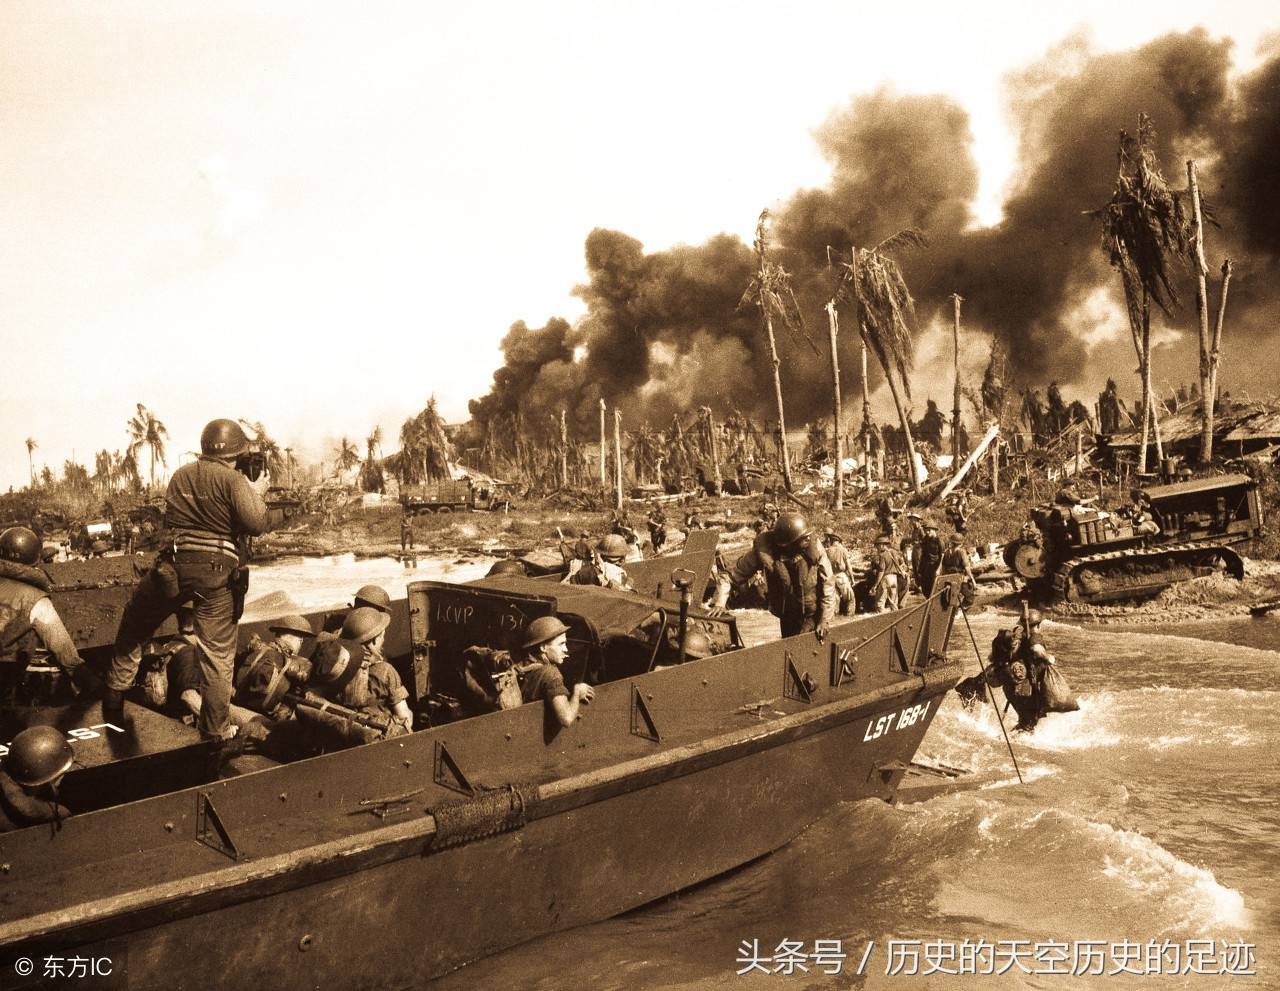 原创二战中日军中途岛战役日军威胁美国本土事件曾经让美国人胆寒